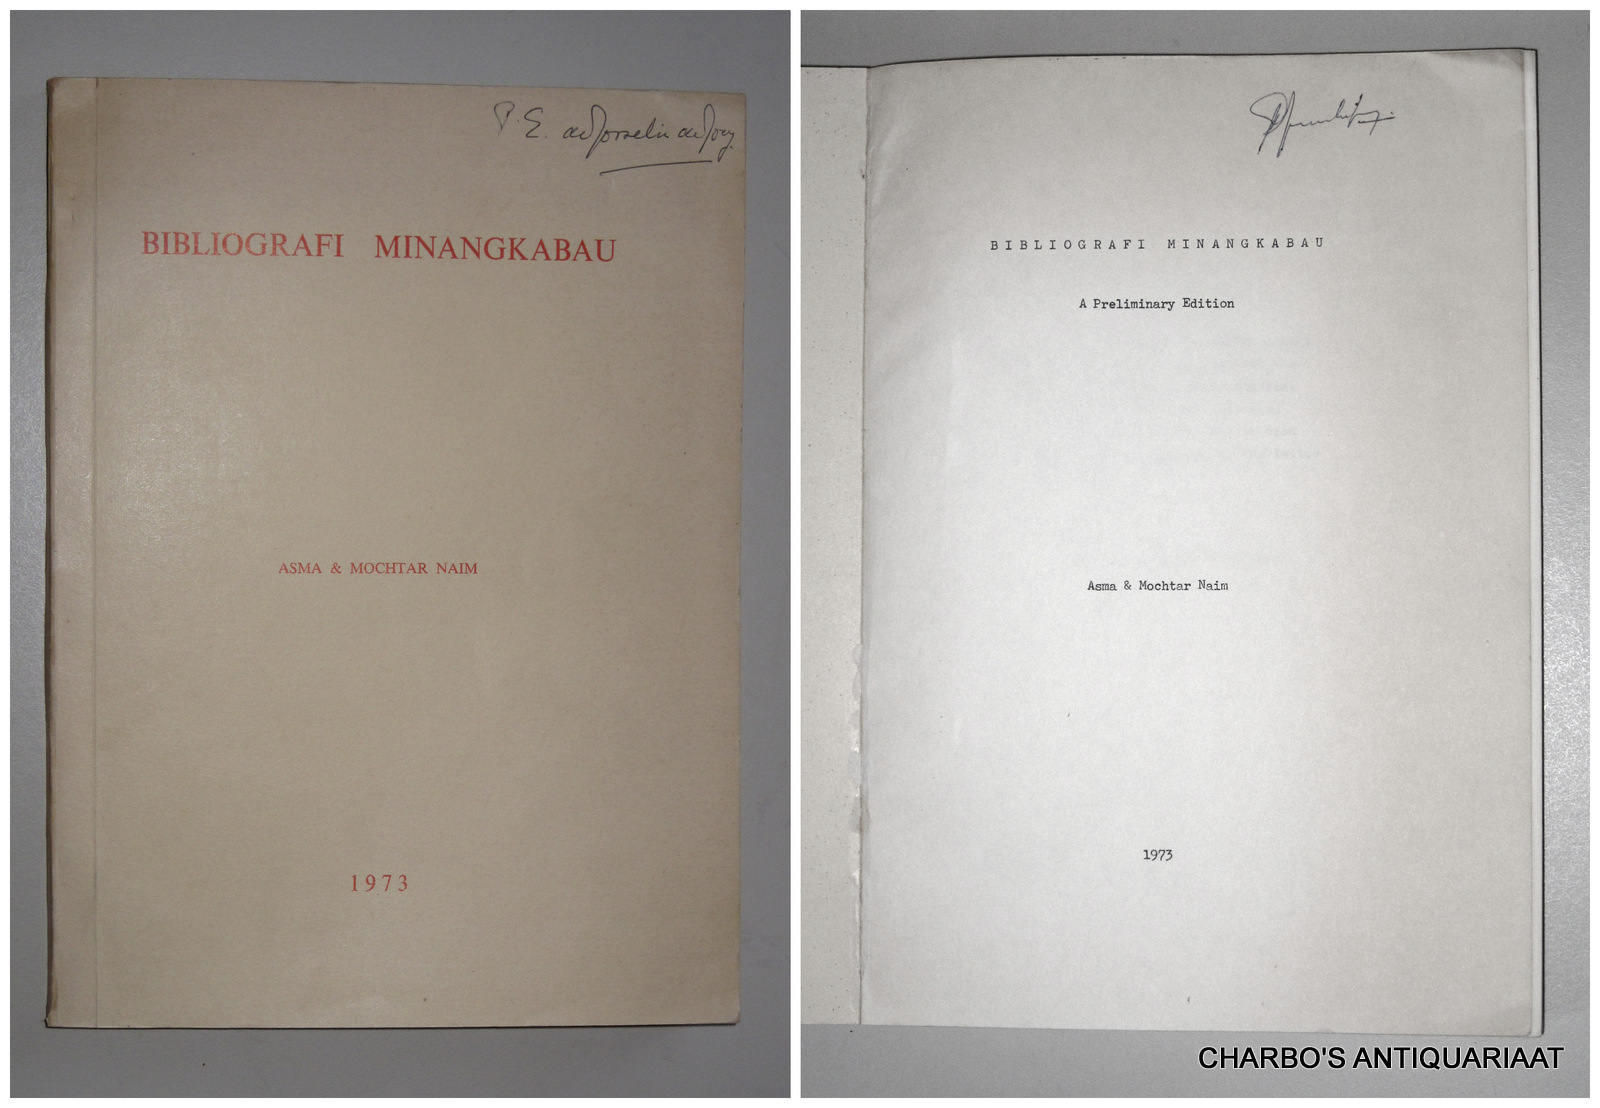 NAIM, ASMA & MOCHTAR, -  Bibliografi Minangkabau. A preliminary edition.